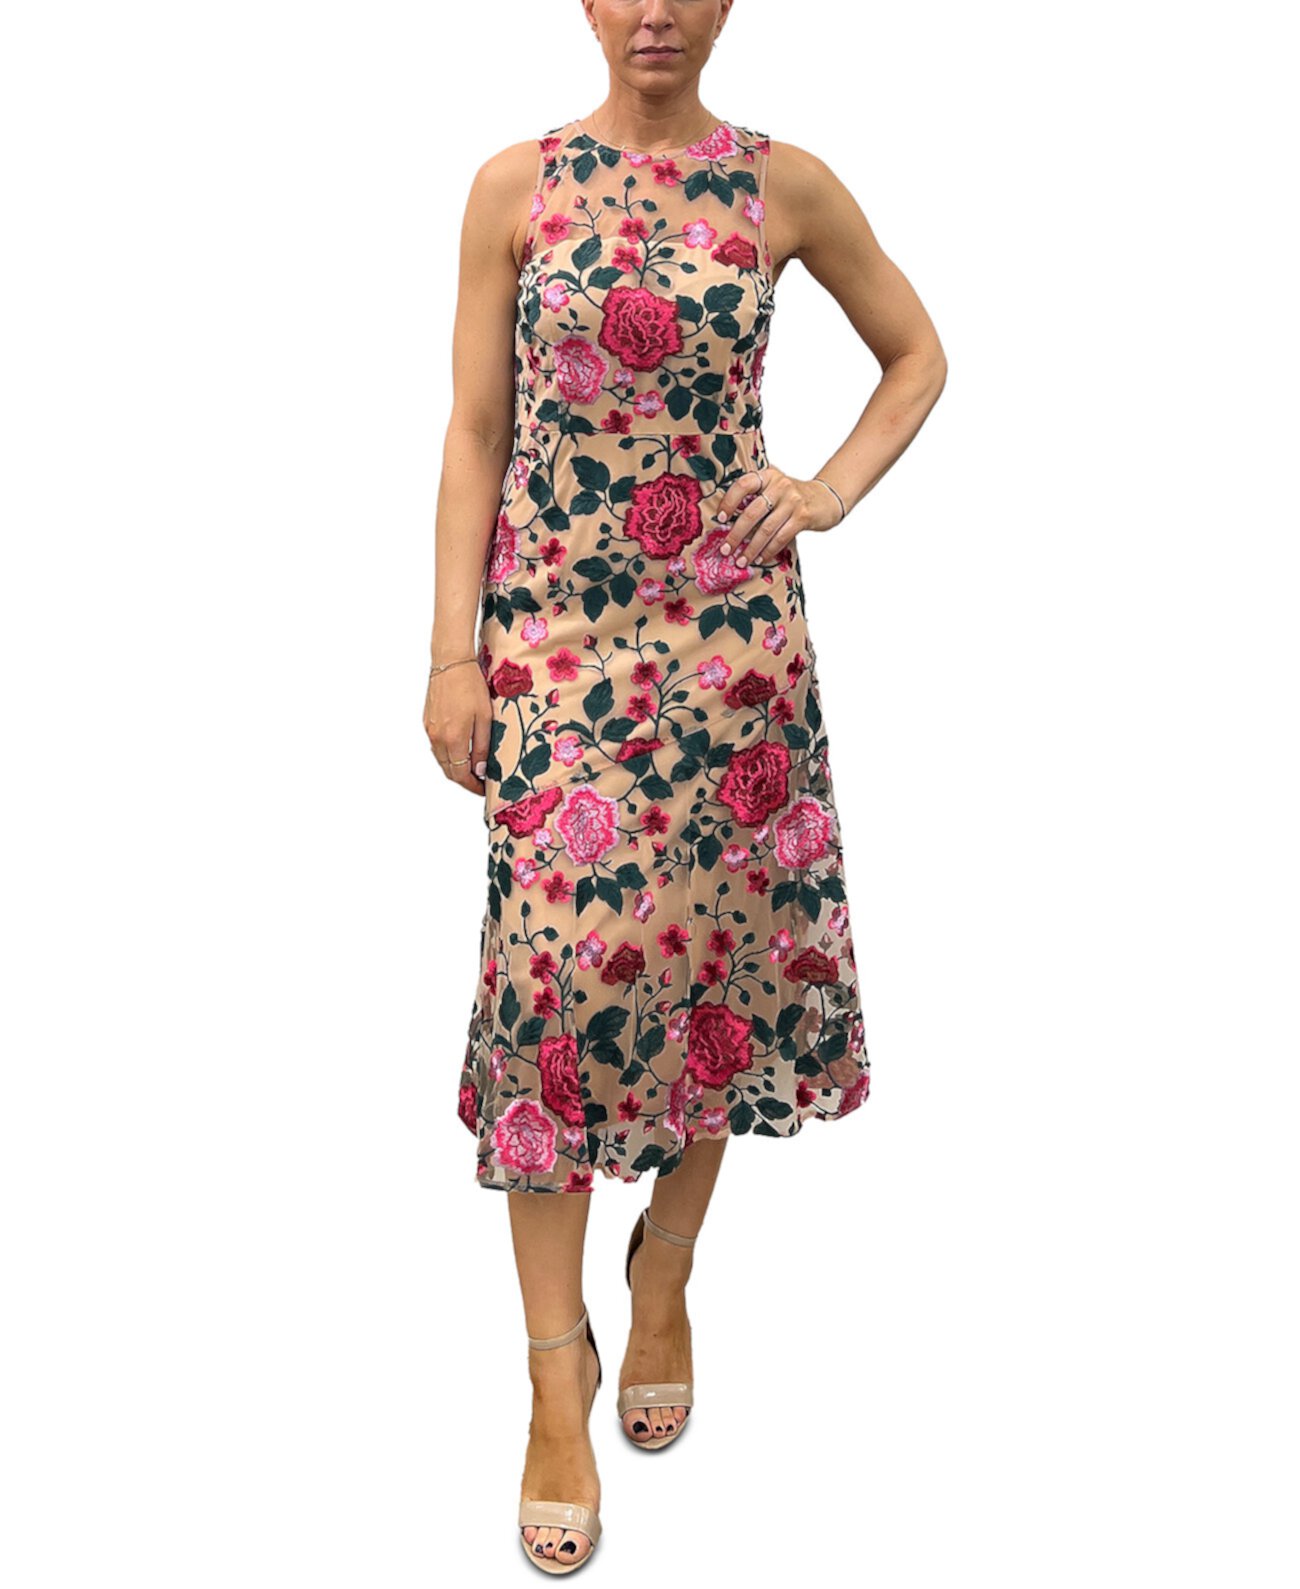 Женское платье без рукавов с вышивкой розовой розы Sam Edelman